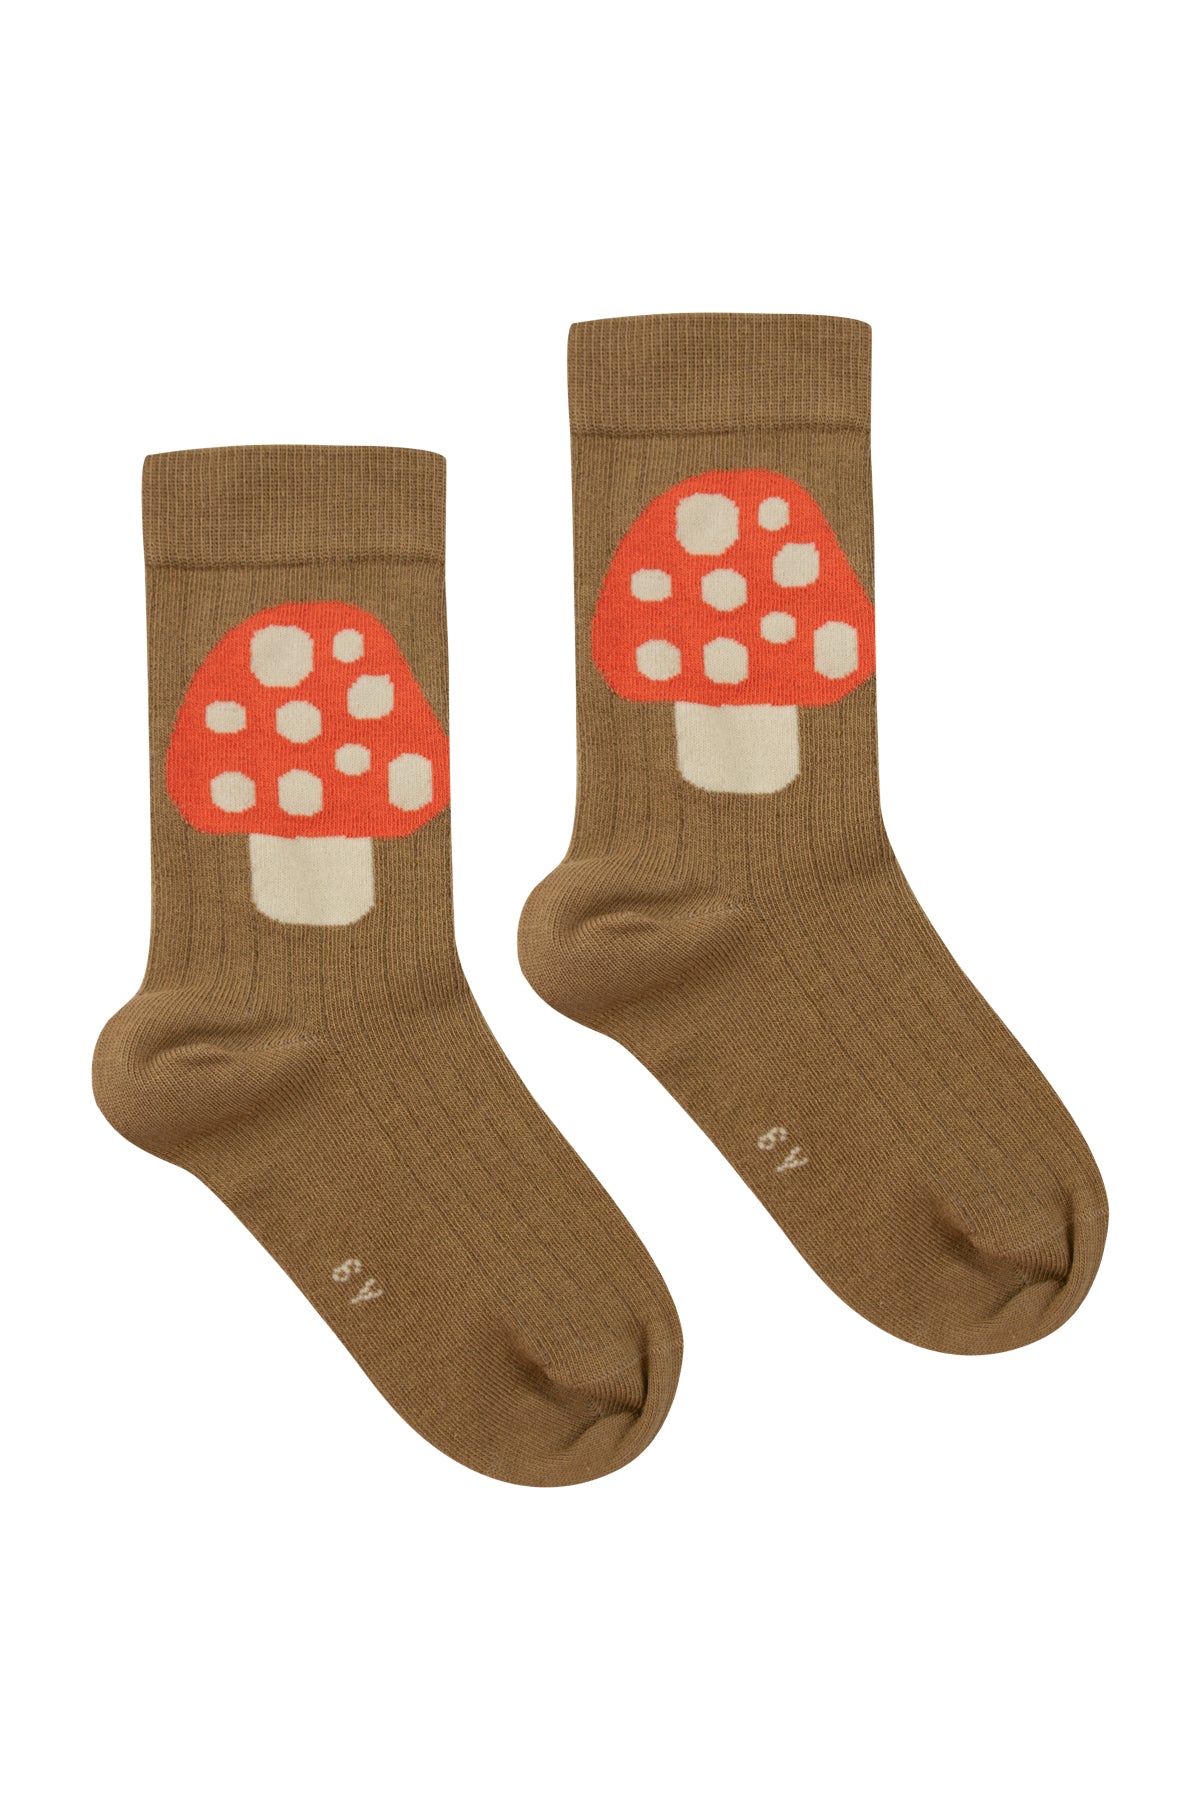 Tinycottons Medium Mushroom Socks